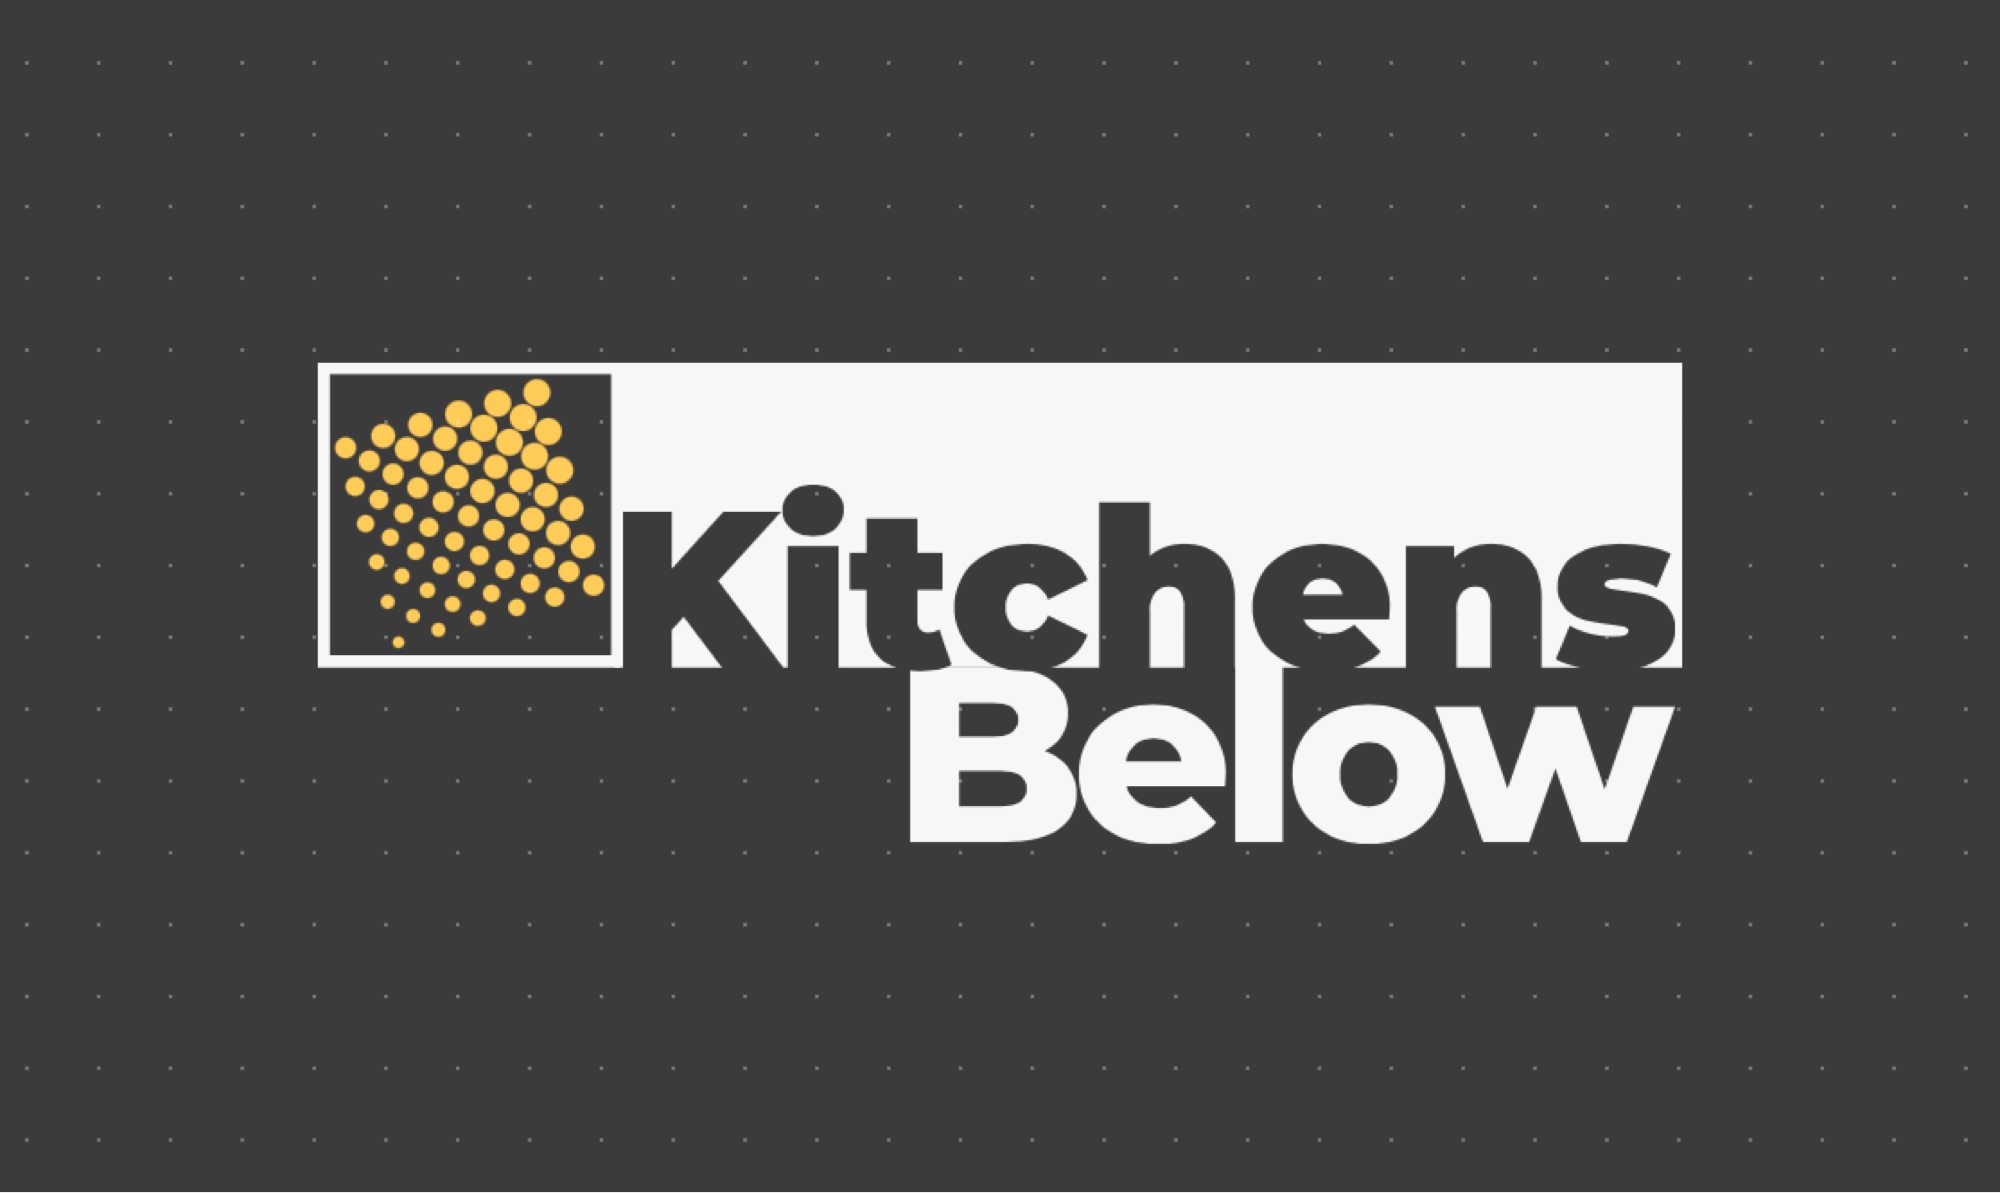 Kitchens Below - Unlicensed Contractor Logo